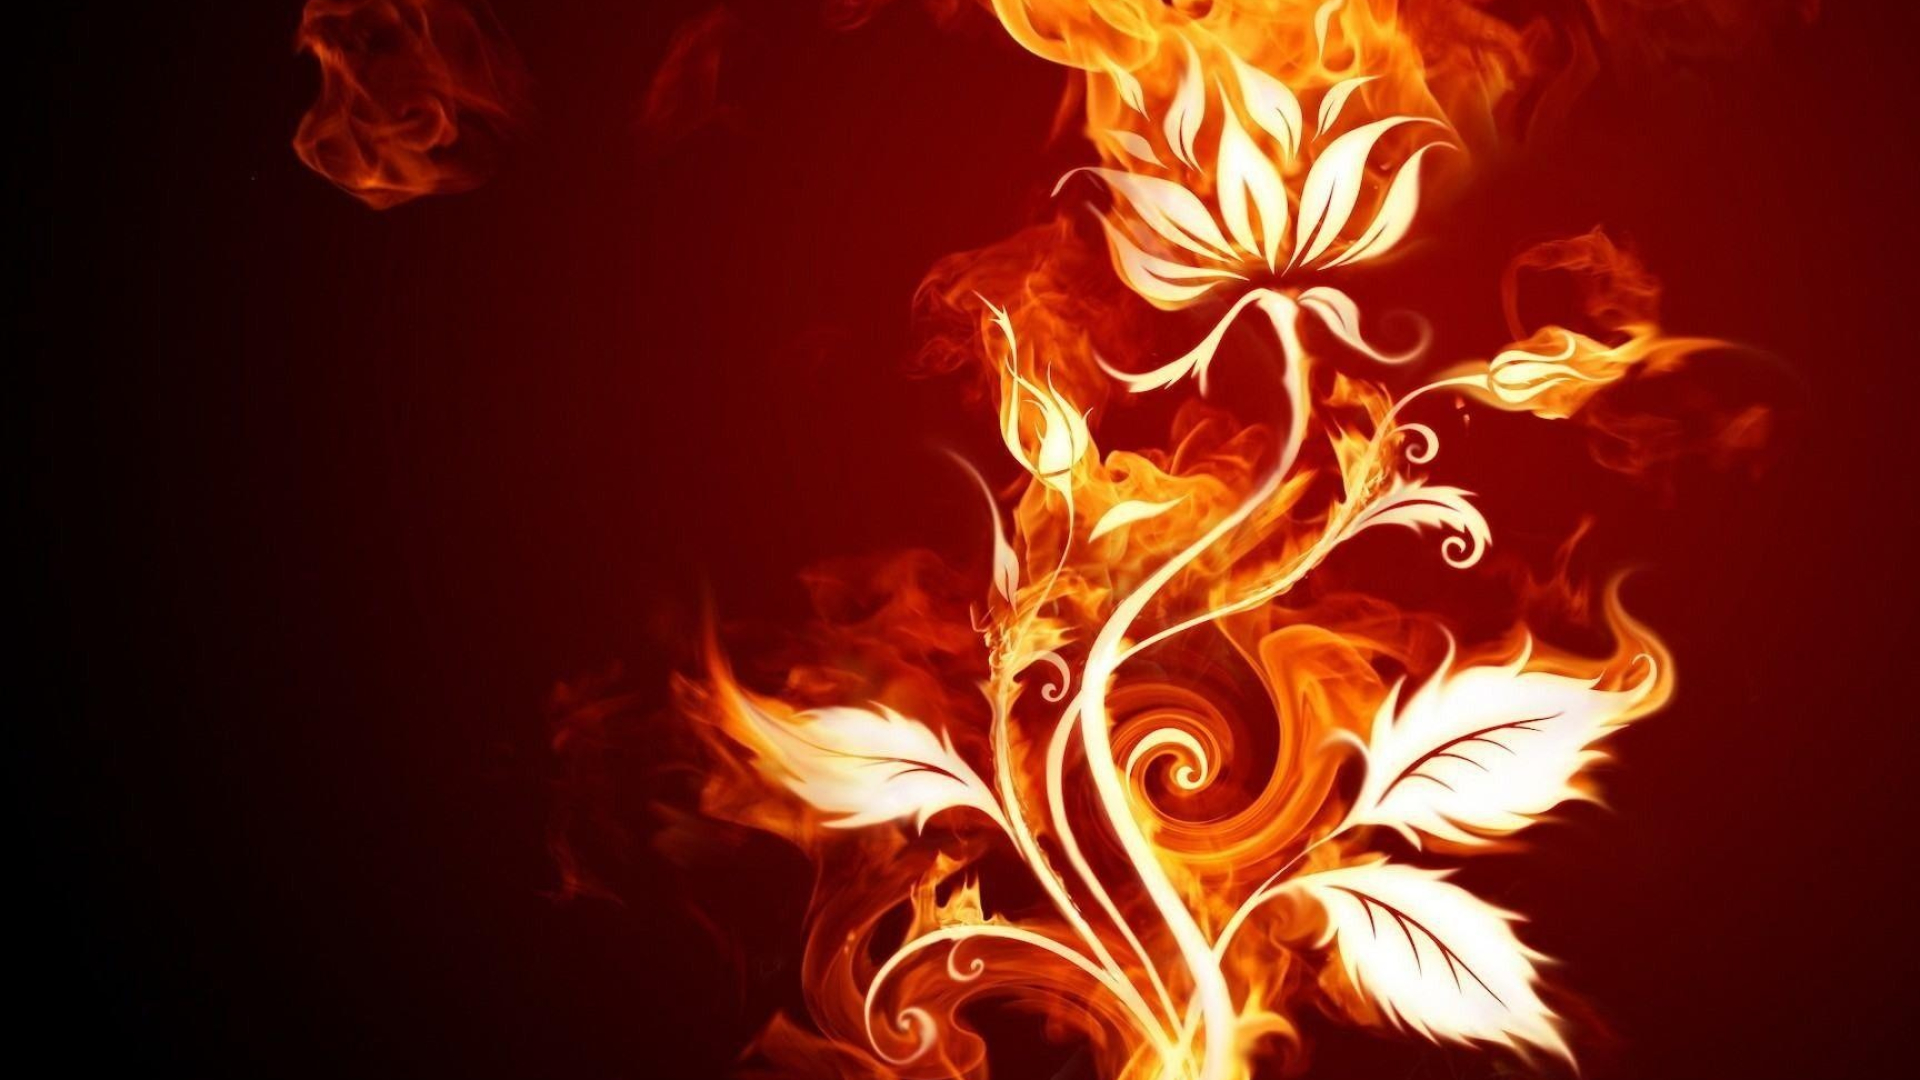 Cool fire wallpapers, Striking visuals, Mesmerizing flames, Dynamic energy, Fiery backdrop, 1920x1080 Full HD Desktop